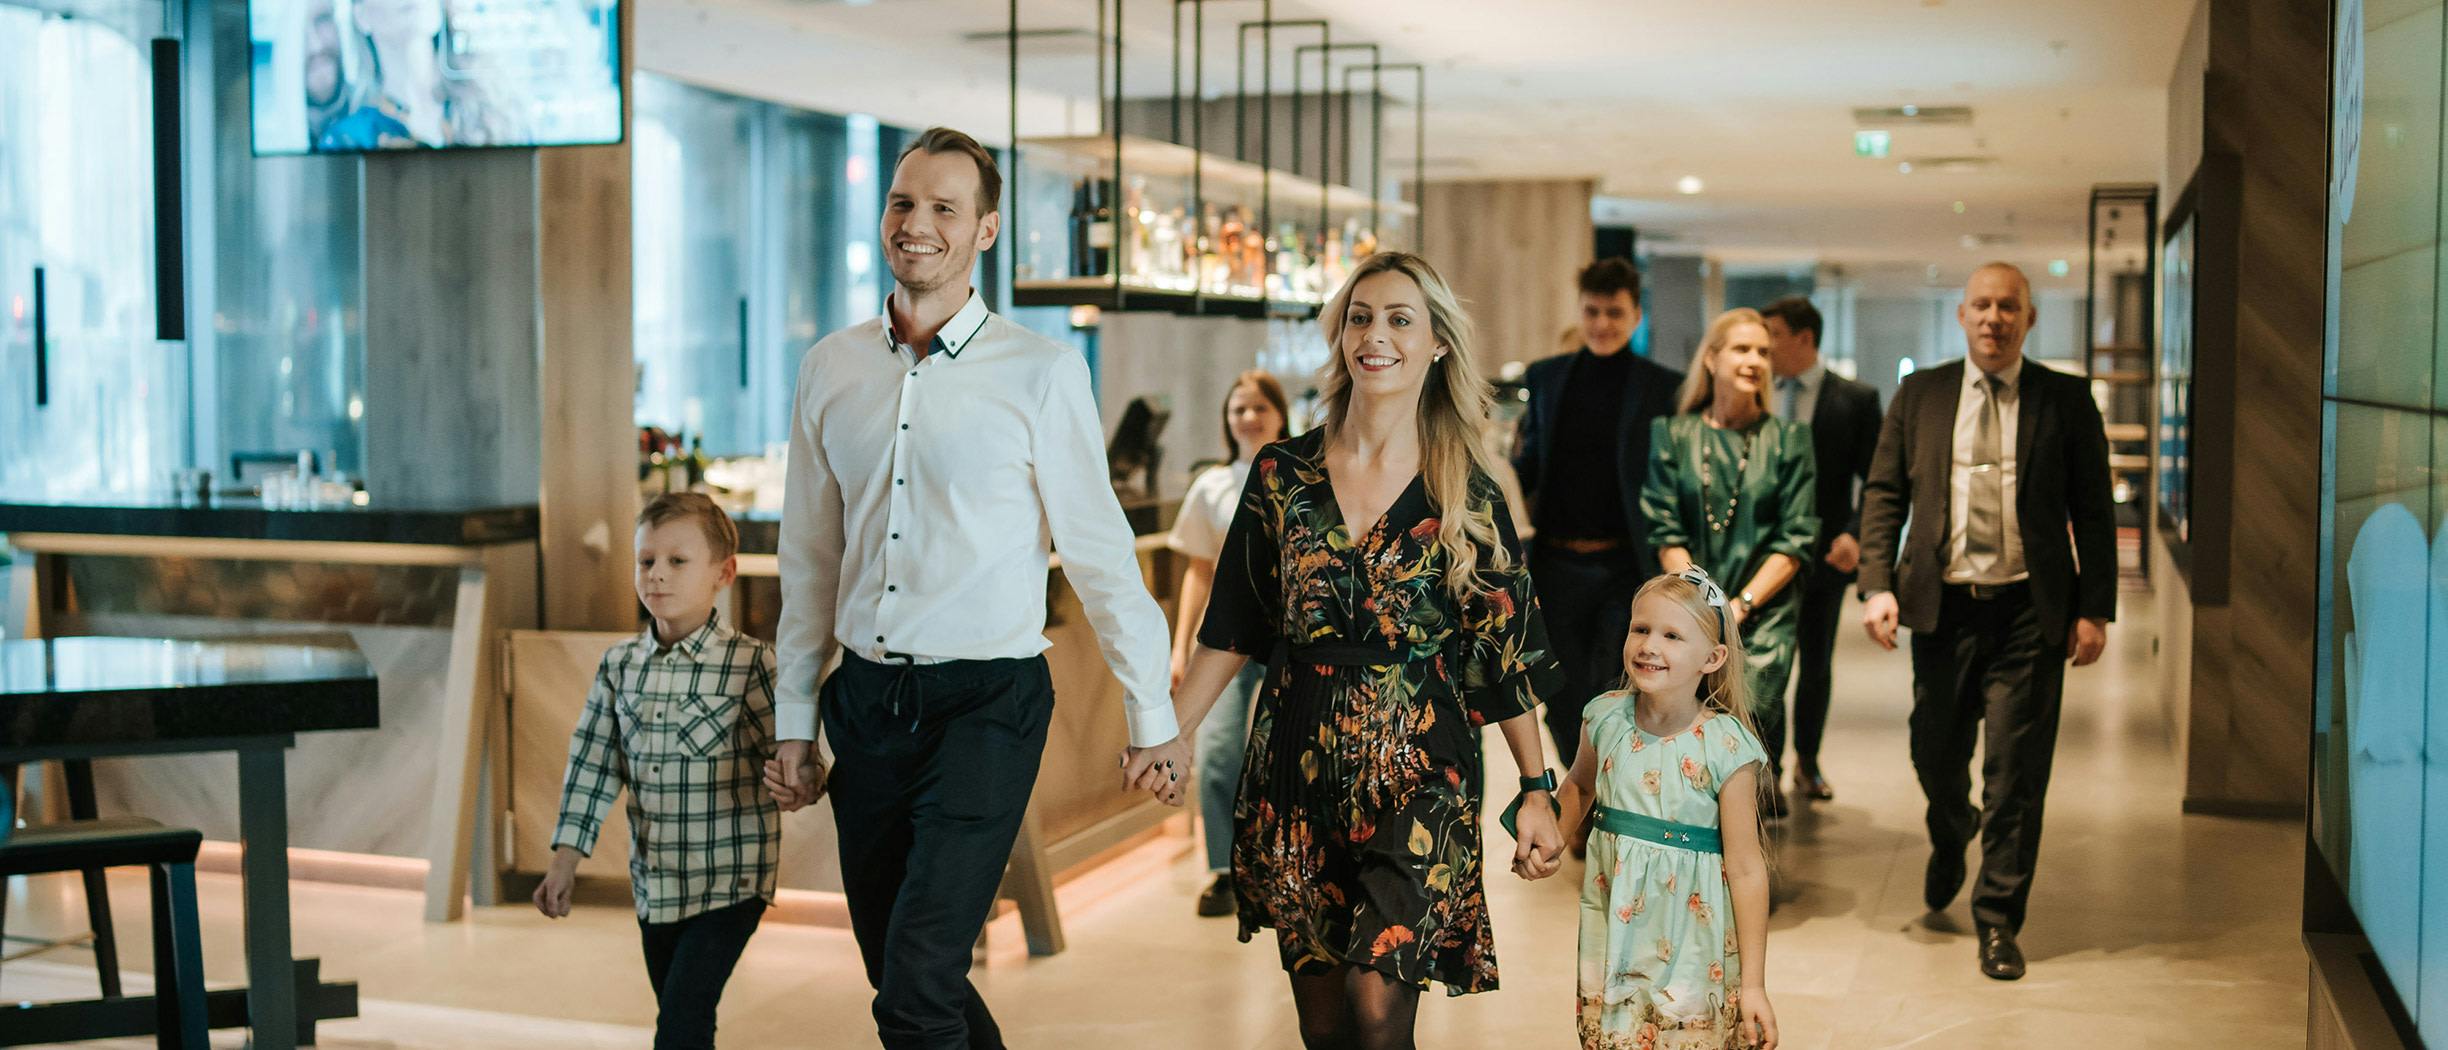 Perhe kävelee hotellin aulassa